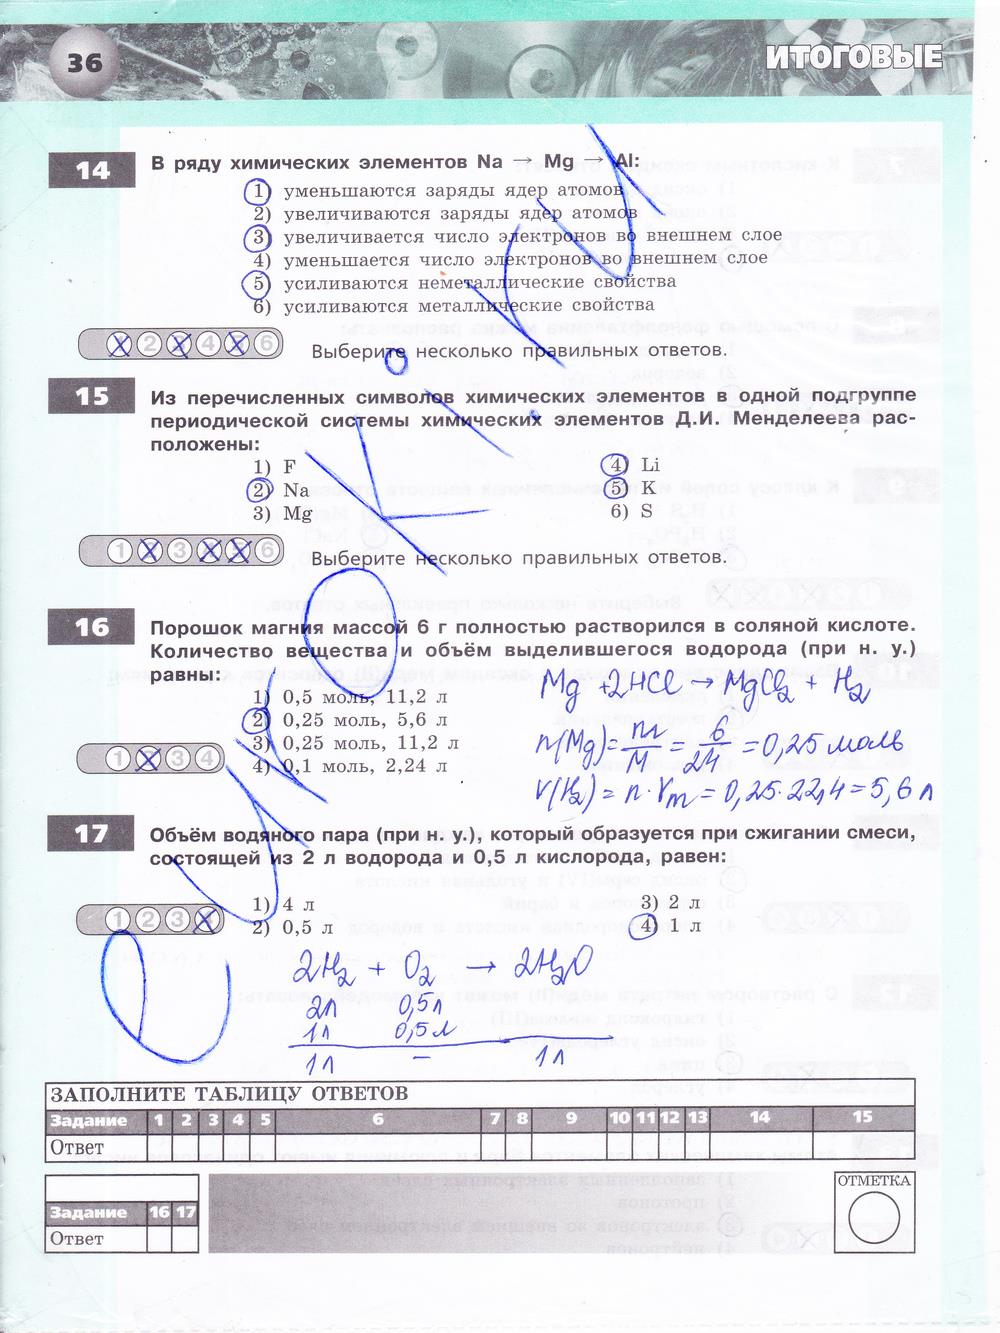 гдз 8 класс тетрадь-экзаменатор страница 36 химия Бобылева, Бирюлина